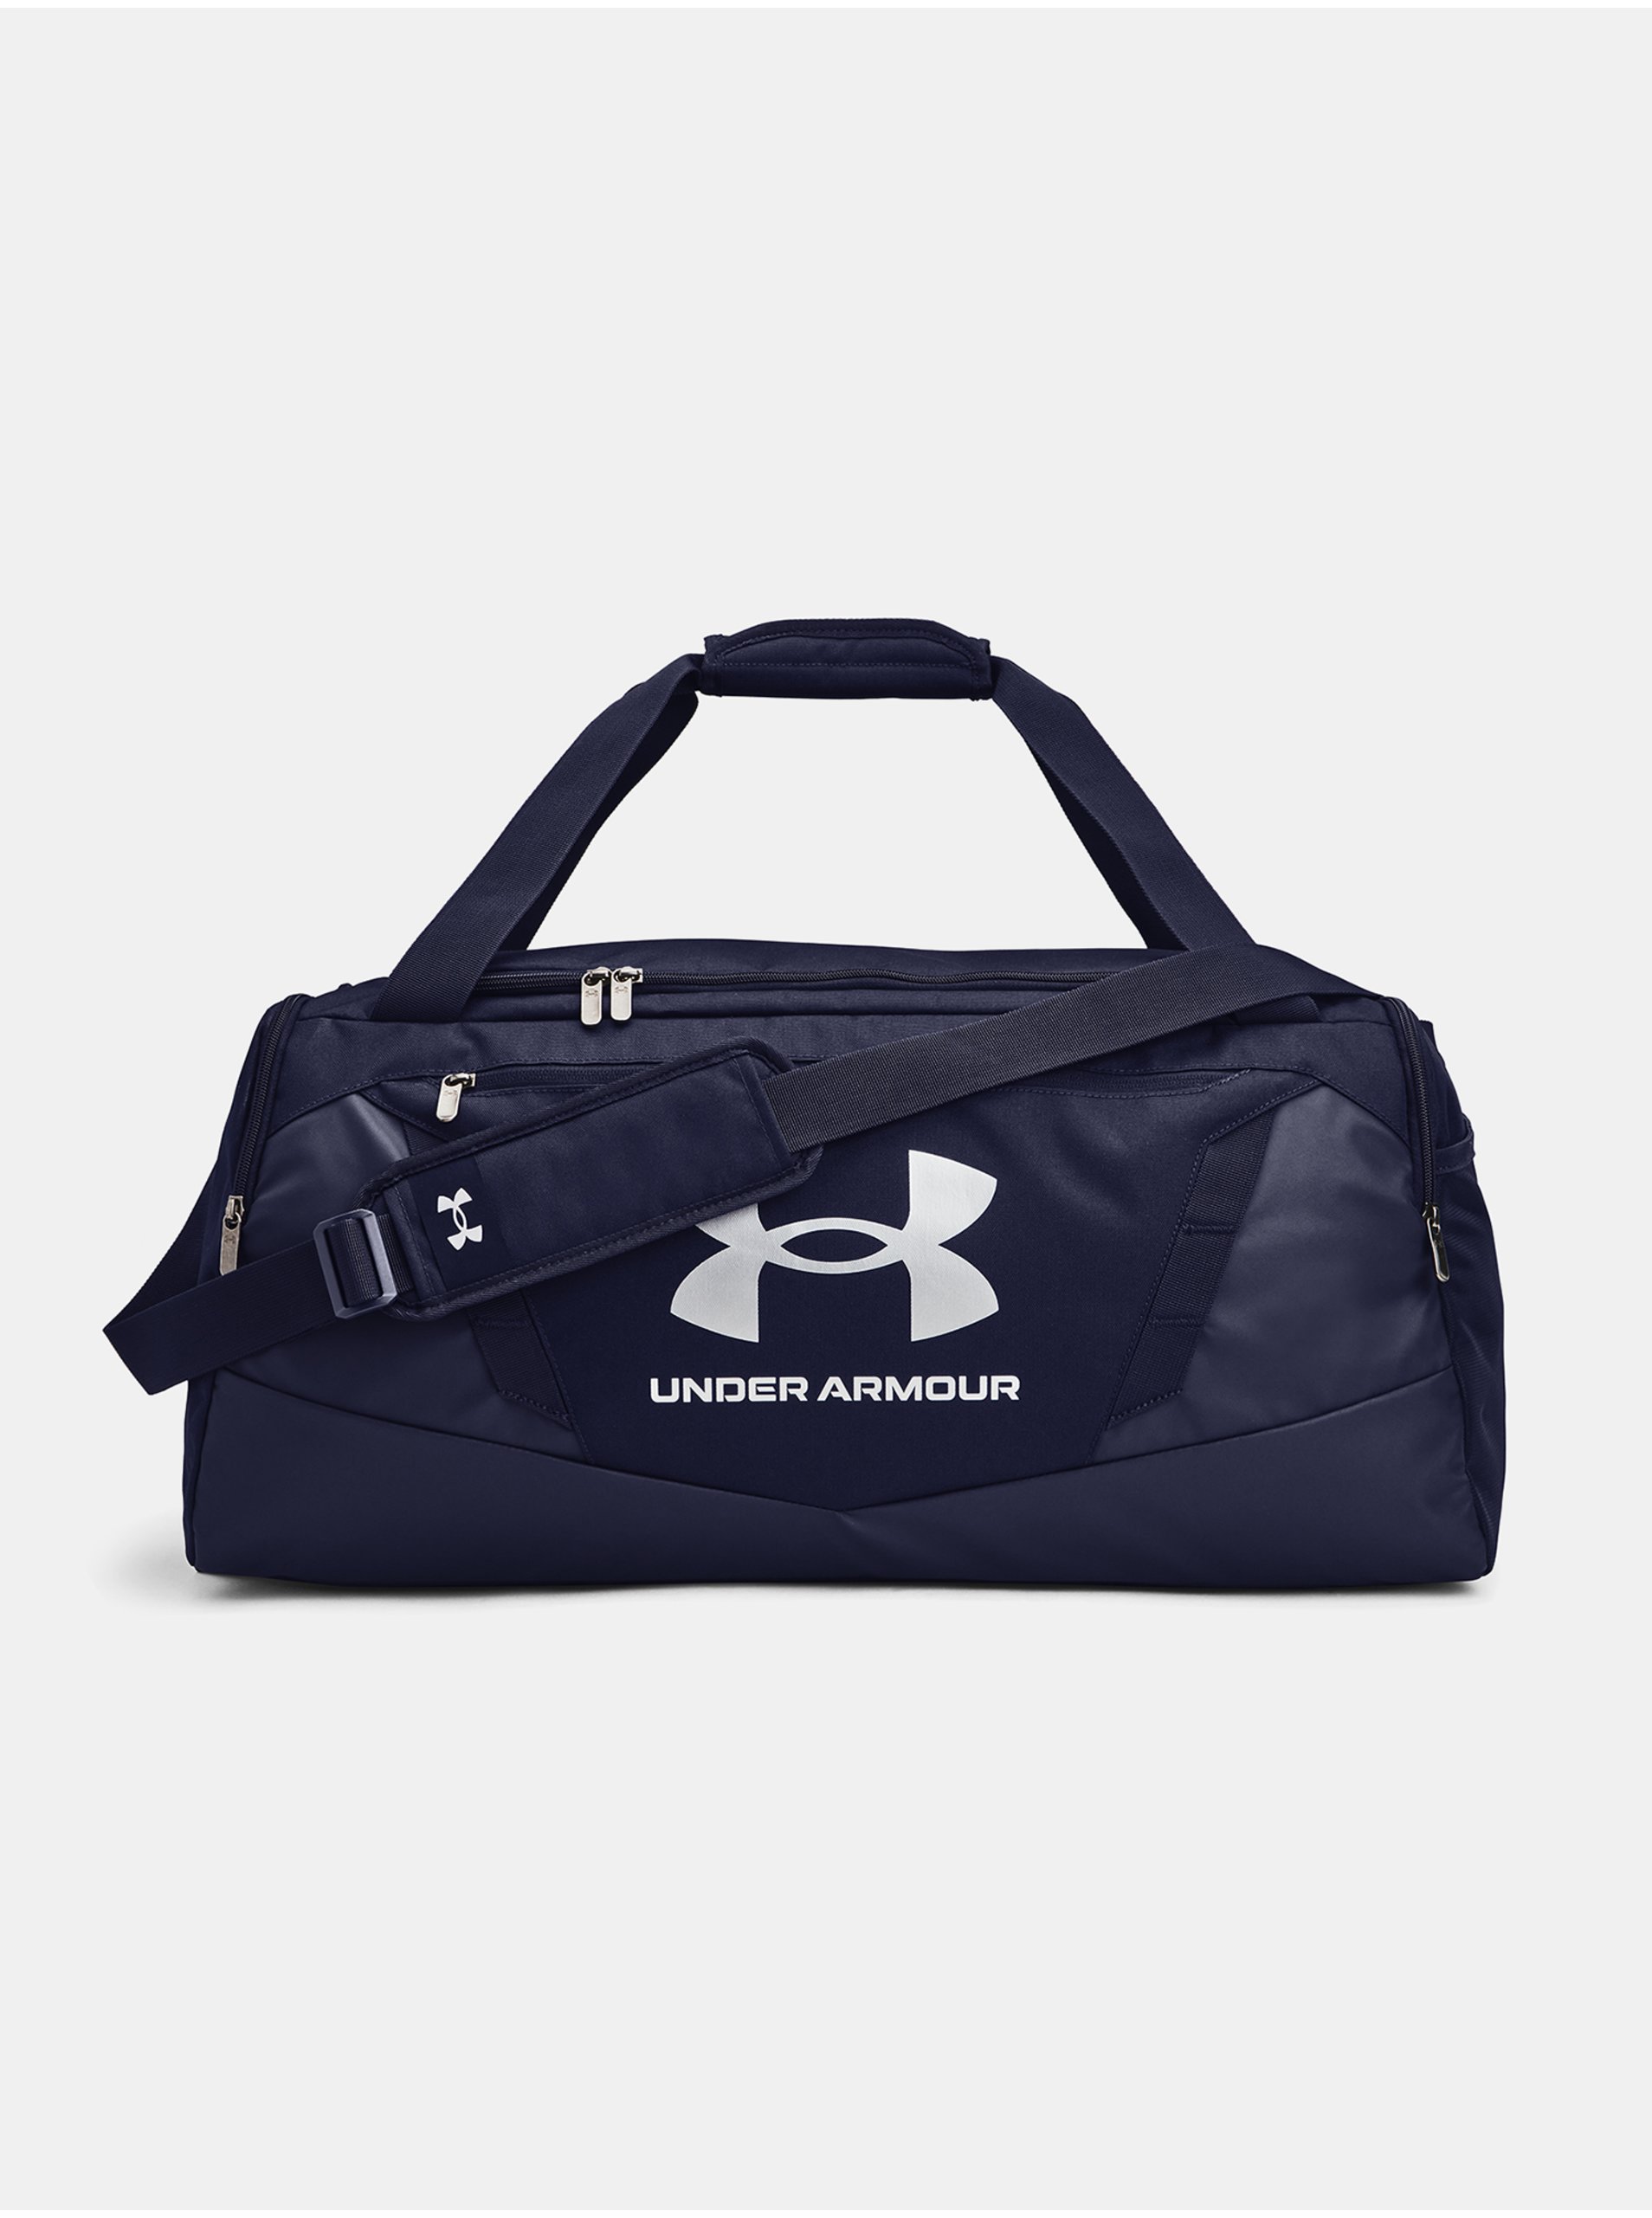 E-shop Tmavě modrá sportovní taška Under Armour UA Undeniable 5.0 Duffle MD